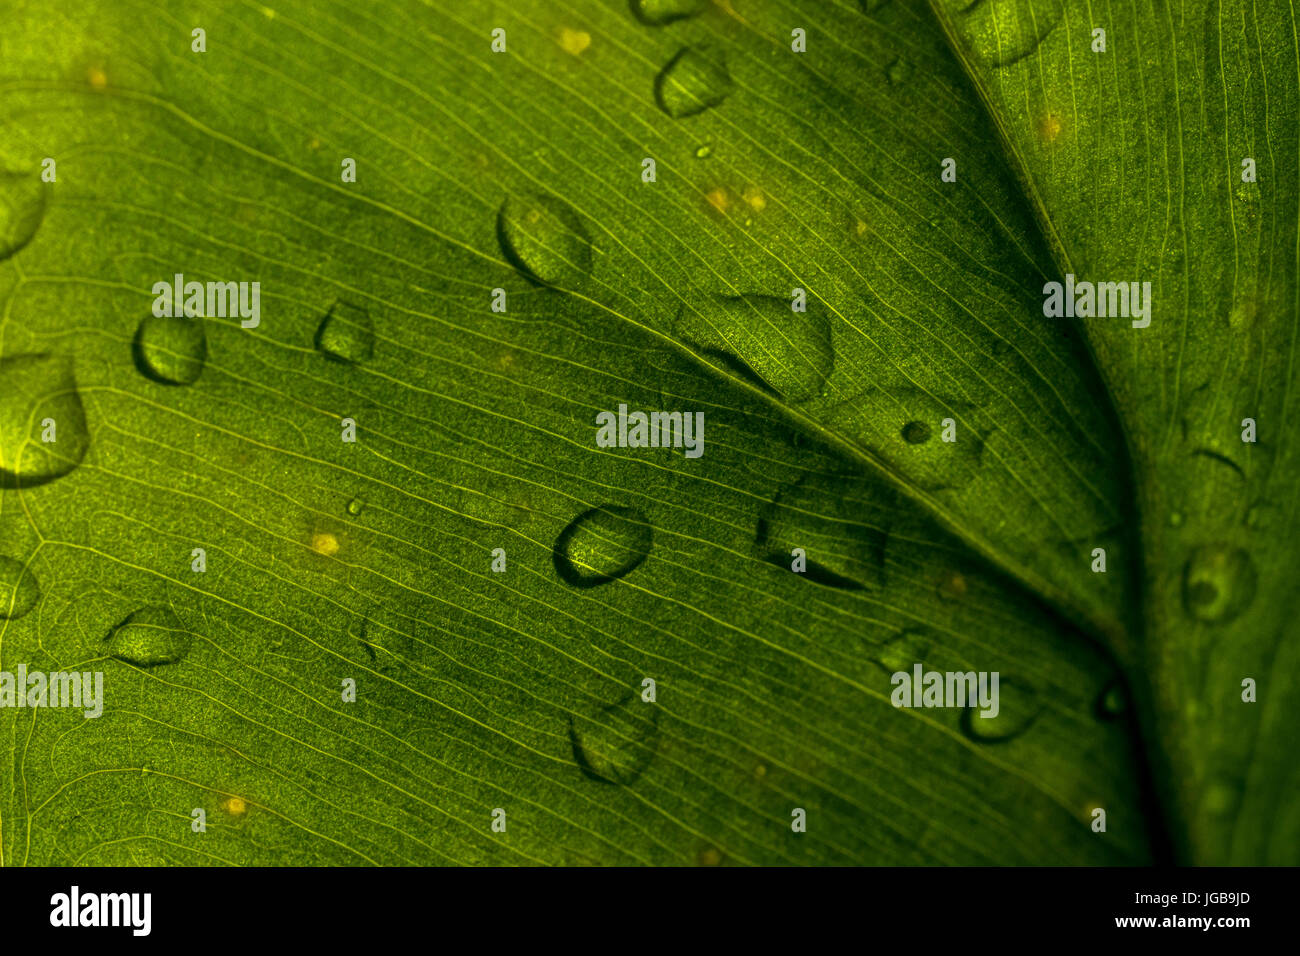 Tiefgrüne Farbe Pflanze Blatt Textur Closeup, mit kleinen Regen Wassertropfen, Hintergrundbeleuchtung. Stockfoto